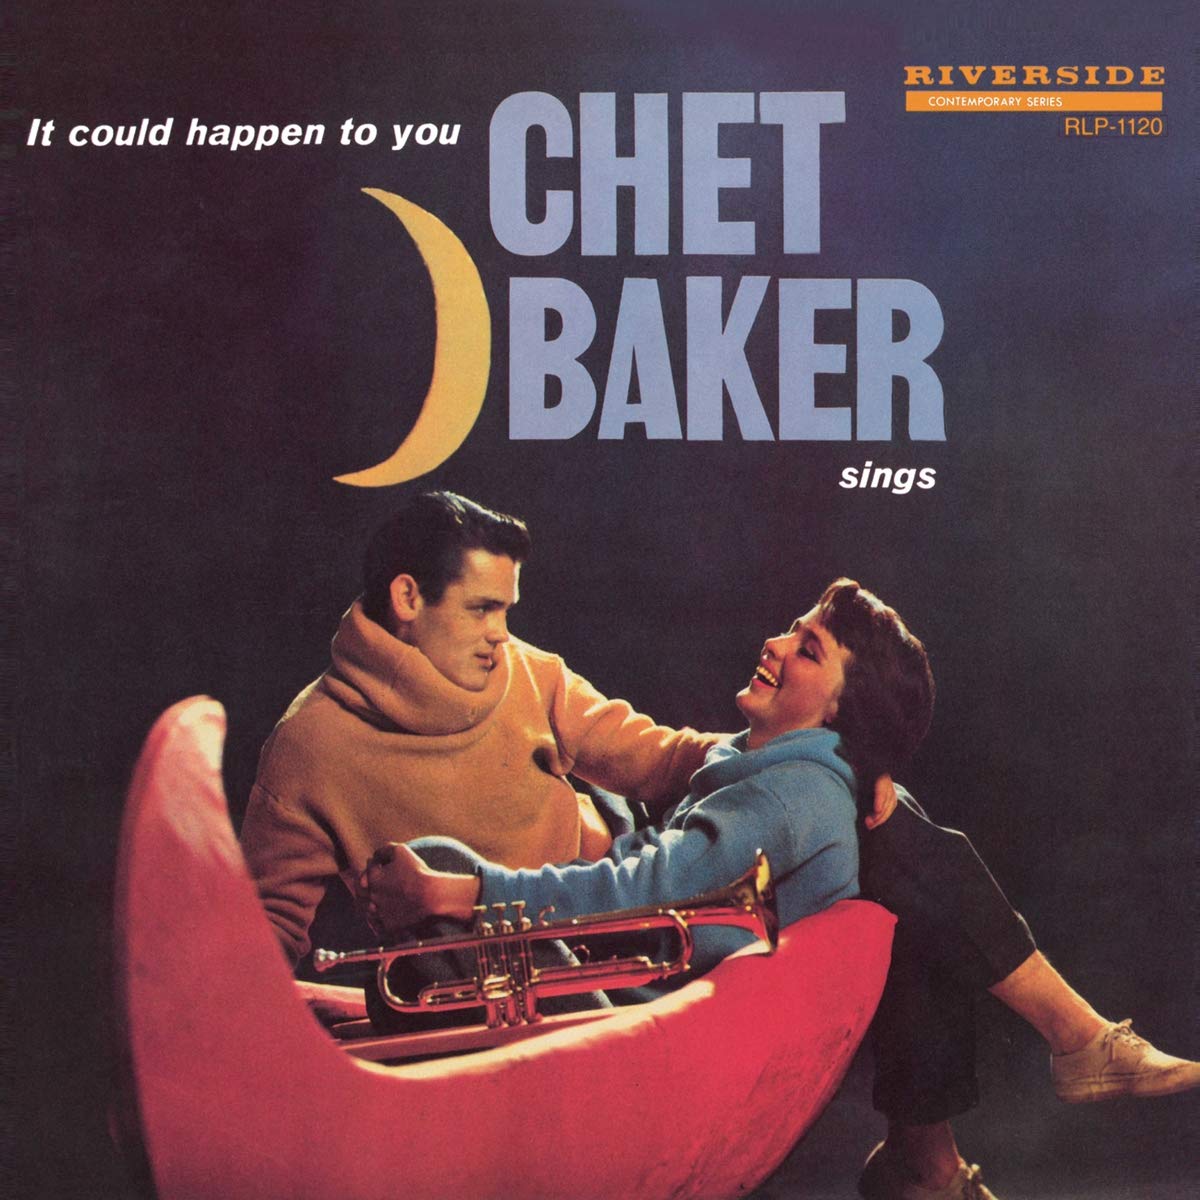 BAKER, CHET - IT COULD HAPPEN TO YOU: CHET BAKER SINGS, Vinyl